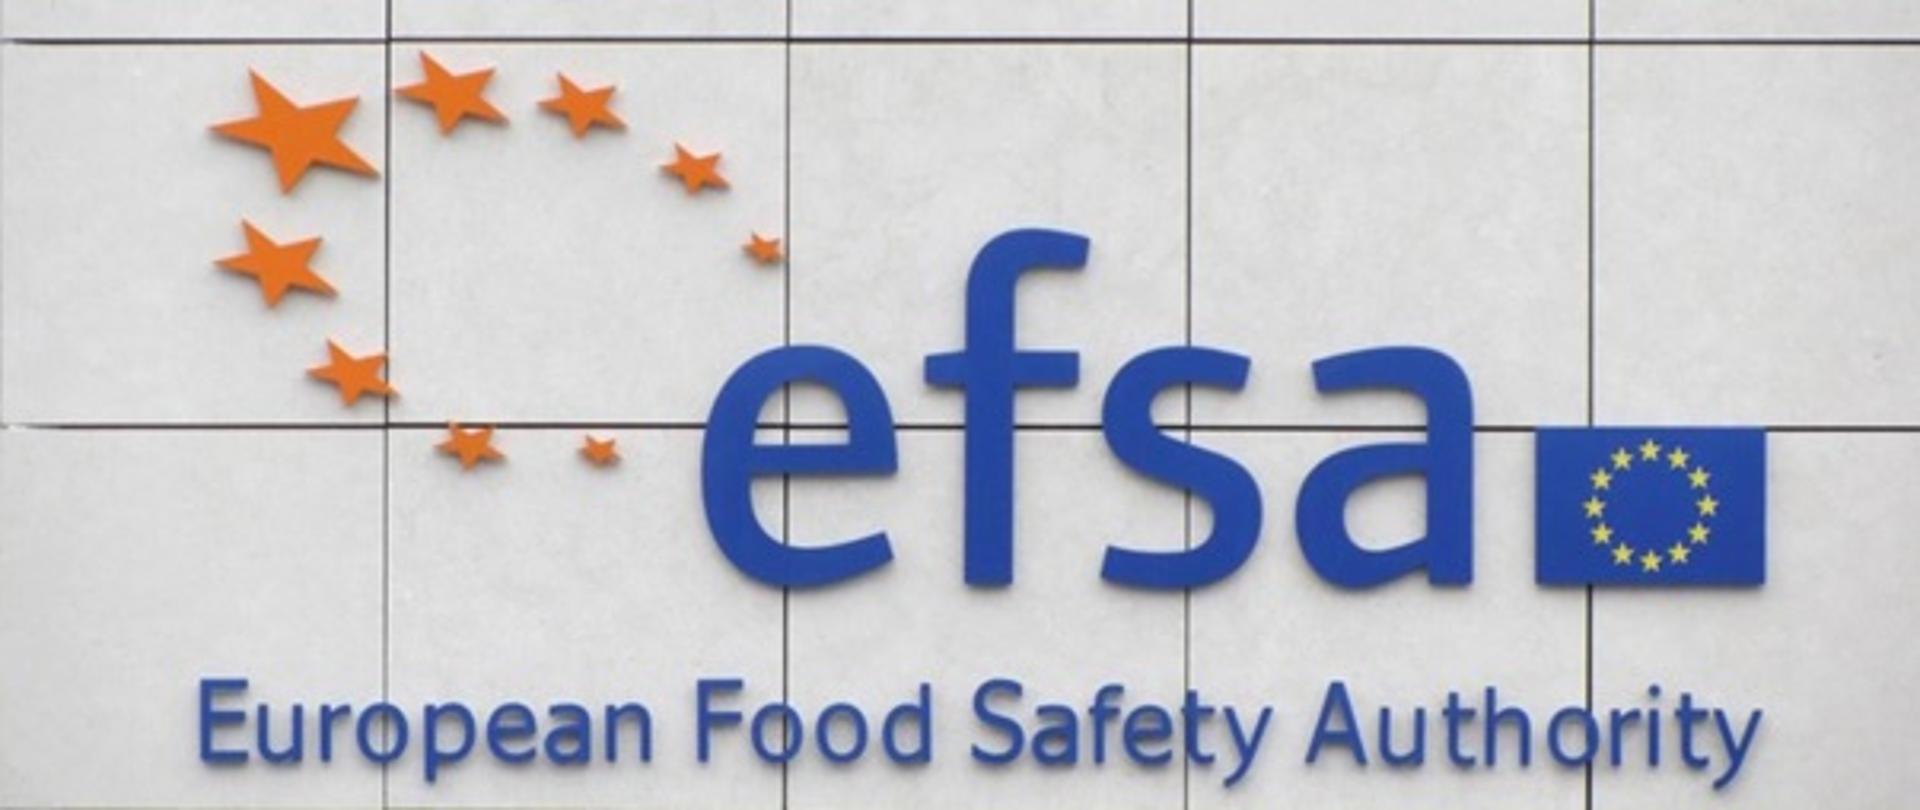 Napis efsa European Food Safety Authority, flaga Unii Europejskiej oraz żółte gwiazdy róznej wielkości ułożone w kształt koła